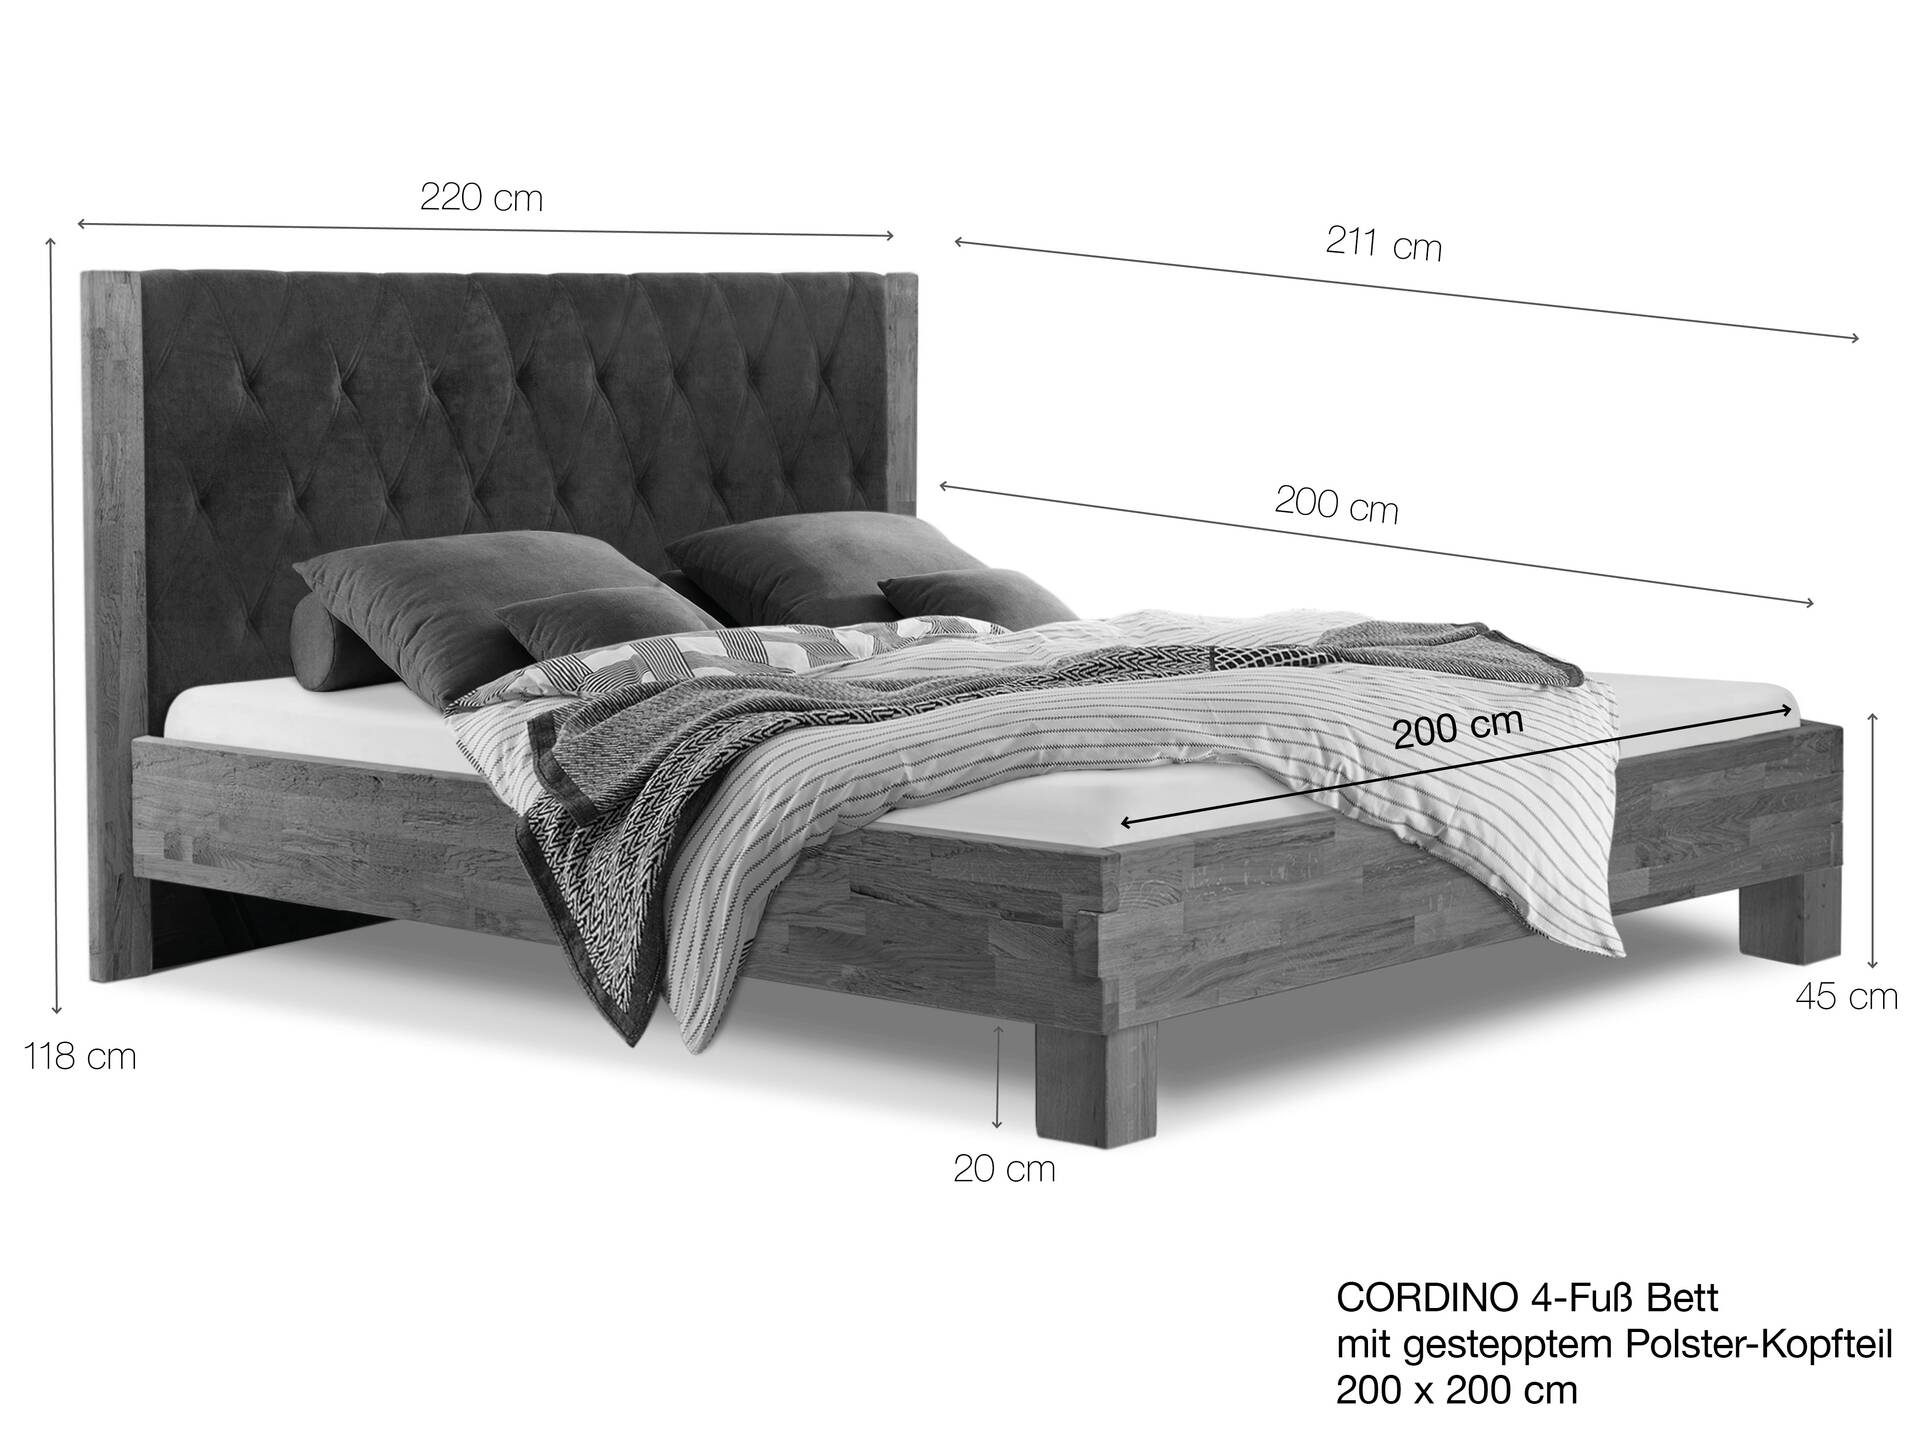 CORDINO 4-Fuß-Bett aus Eiche mit gestepptem Polster-Kopfteil, Material Massivholz 200 x 200 cm | Eiche lackiert | Kunstleder Schwarz | gebürstet